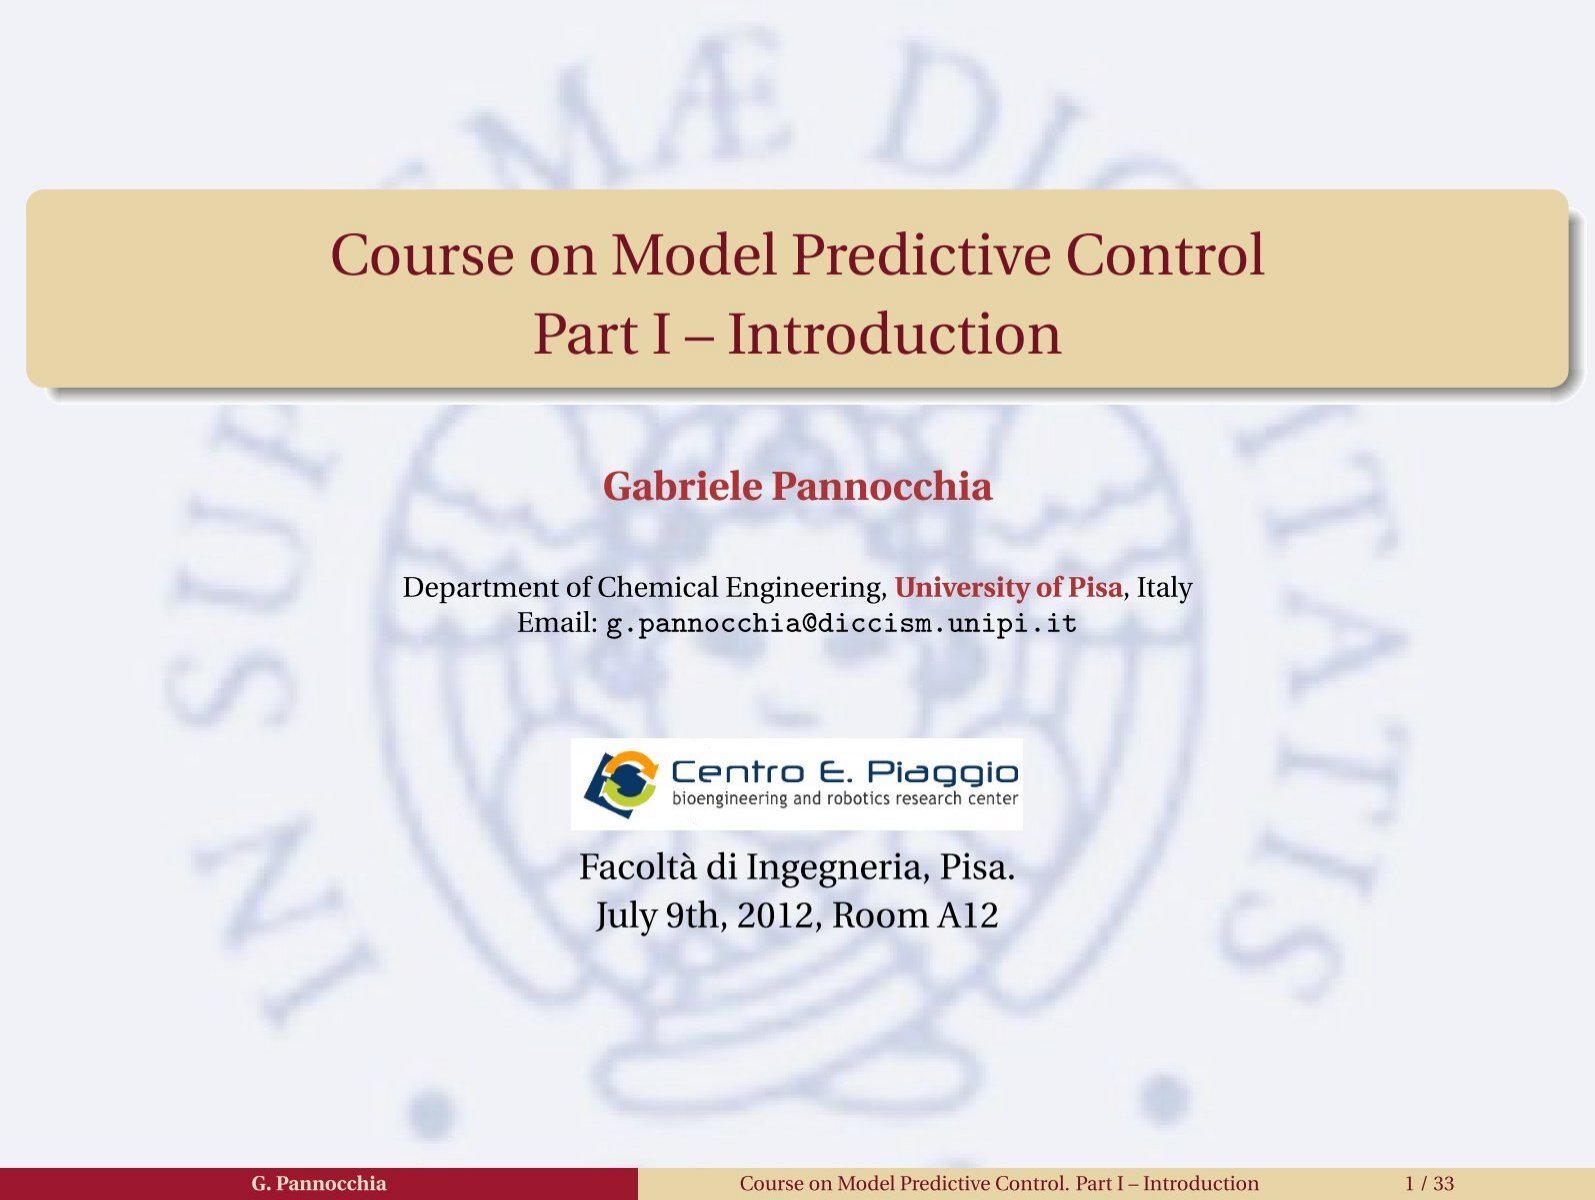 Course On Model Predictive Control Part I Centro E Piaggio